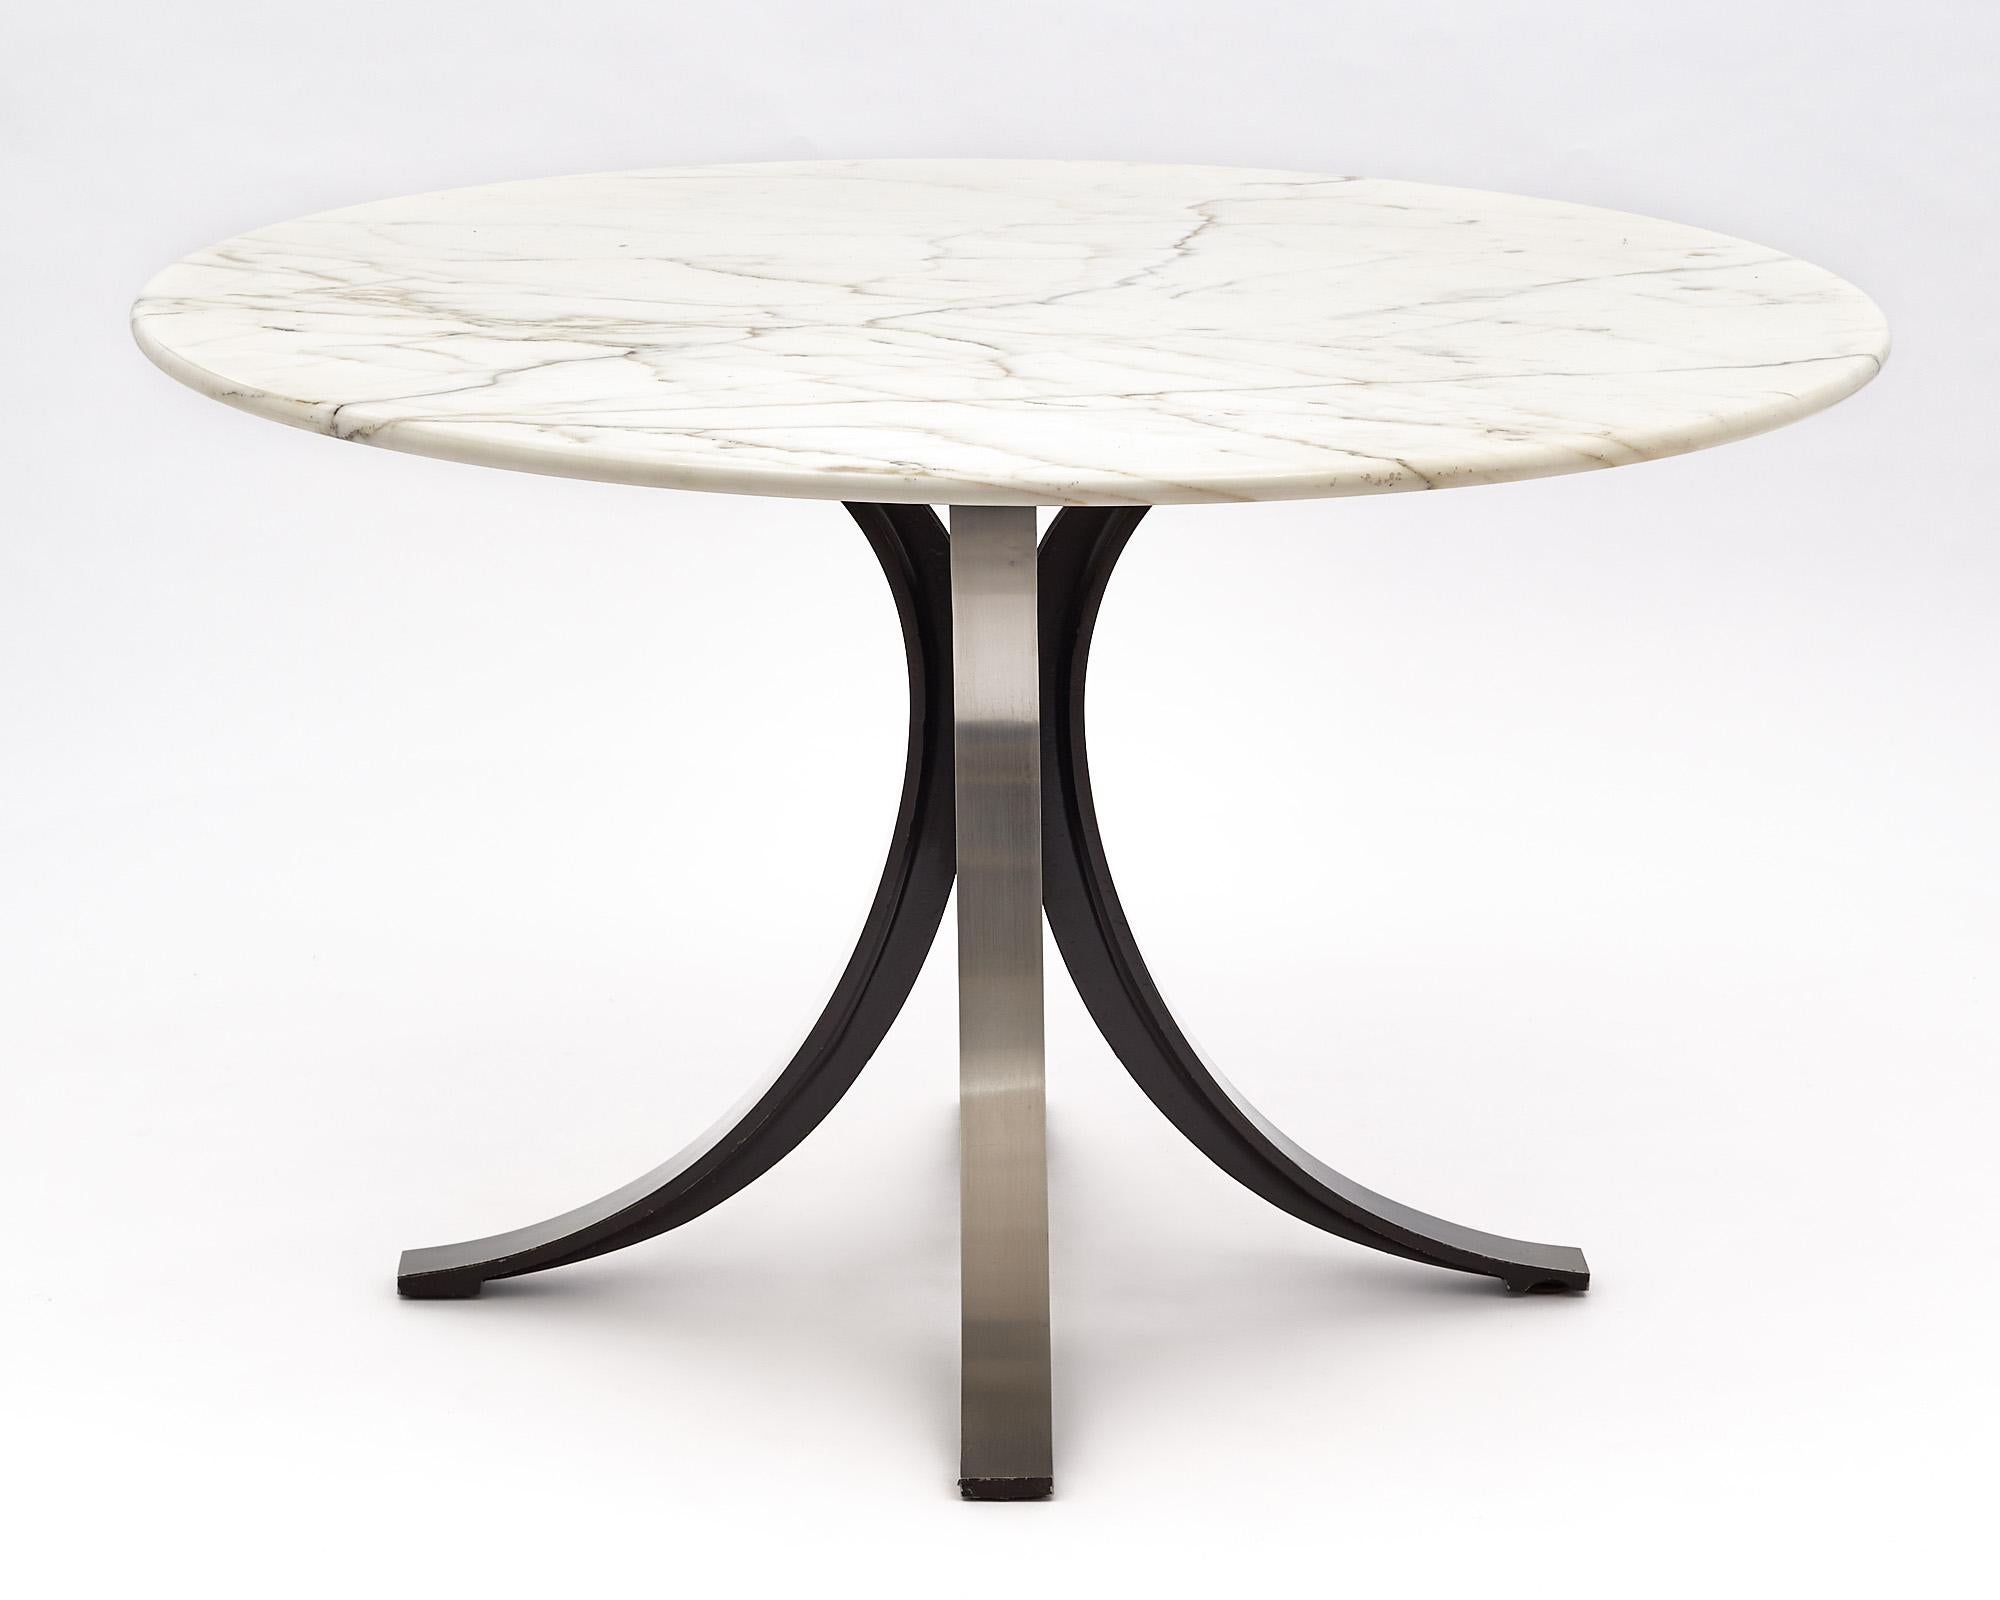 Tisch, italienisch, entworfen von Osvaldo Borsani für Tecno. Platte aus Carrara-Marmor mit stilisiertem Stahlsockel.